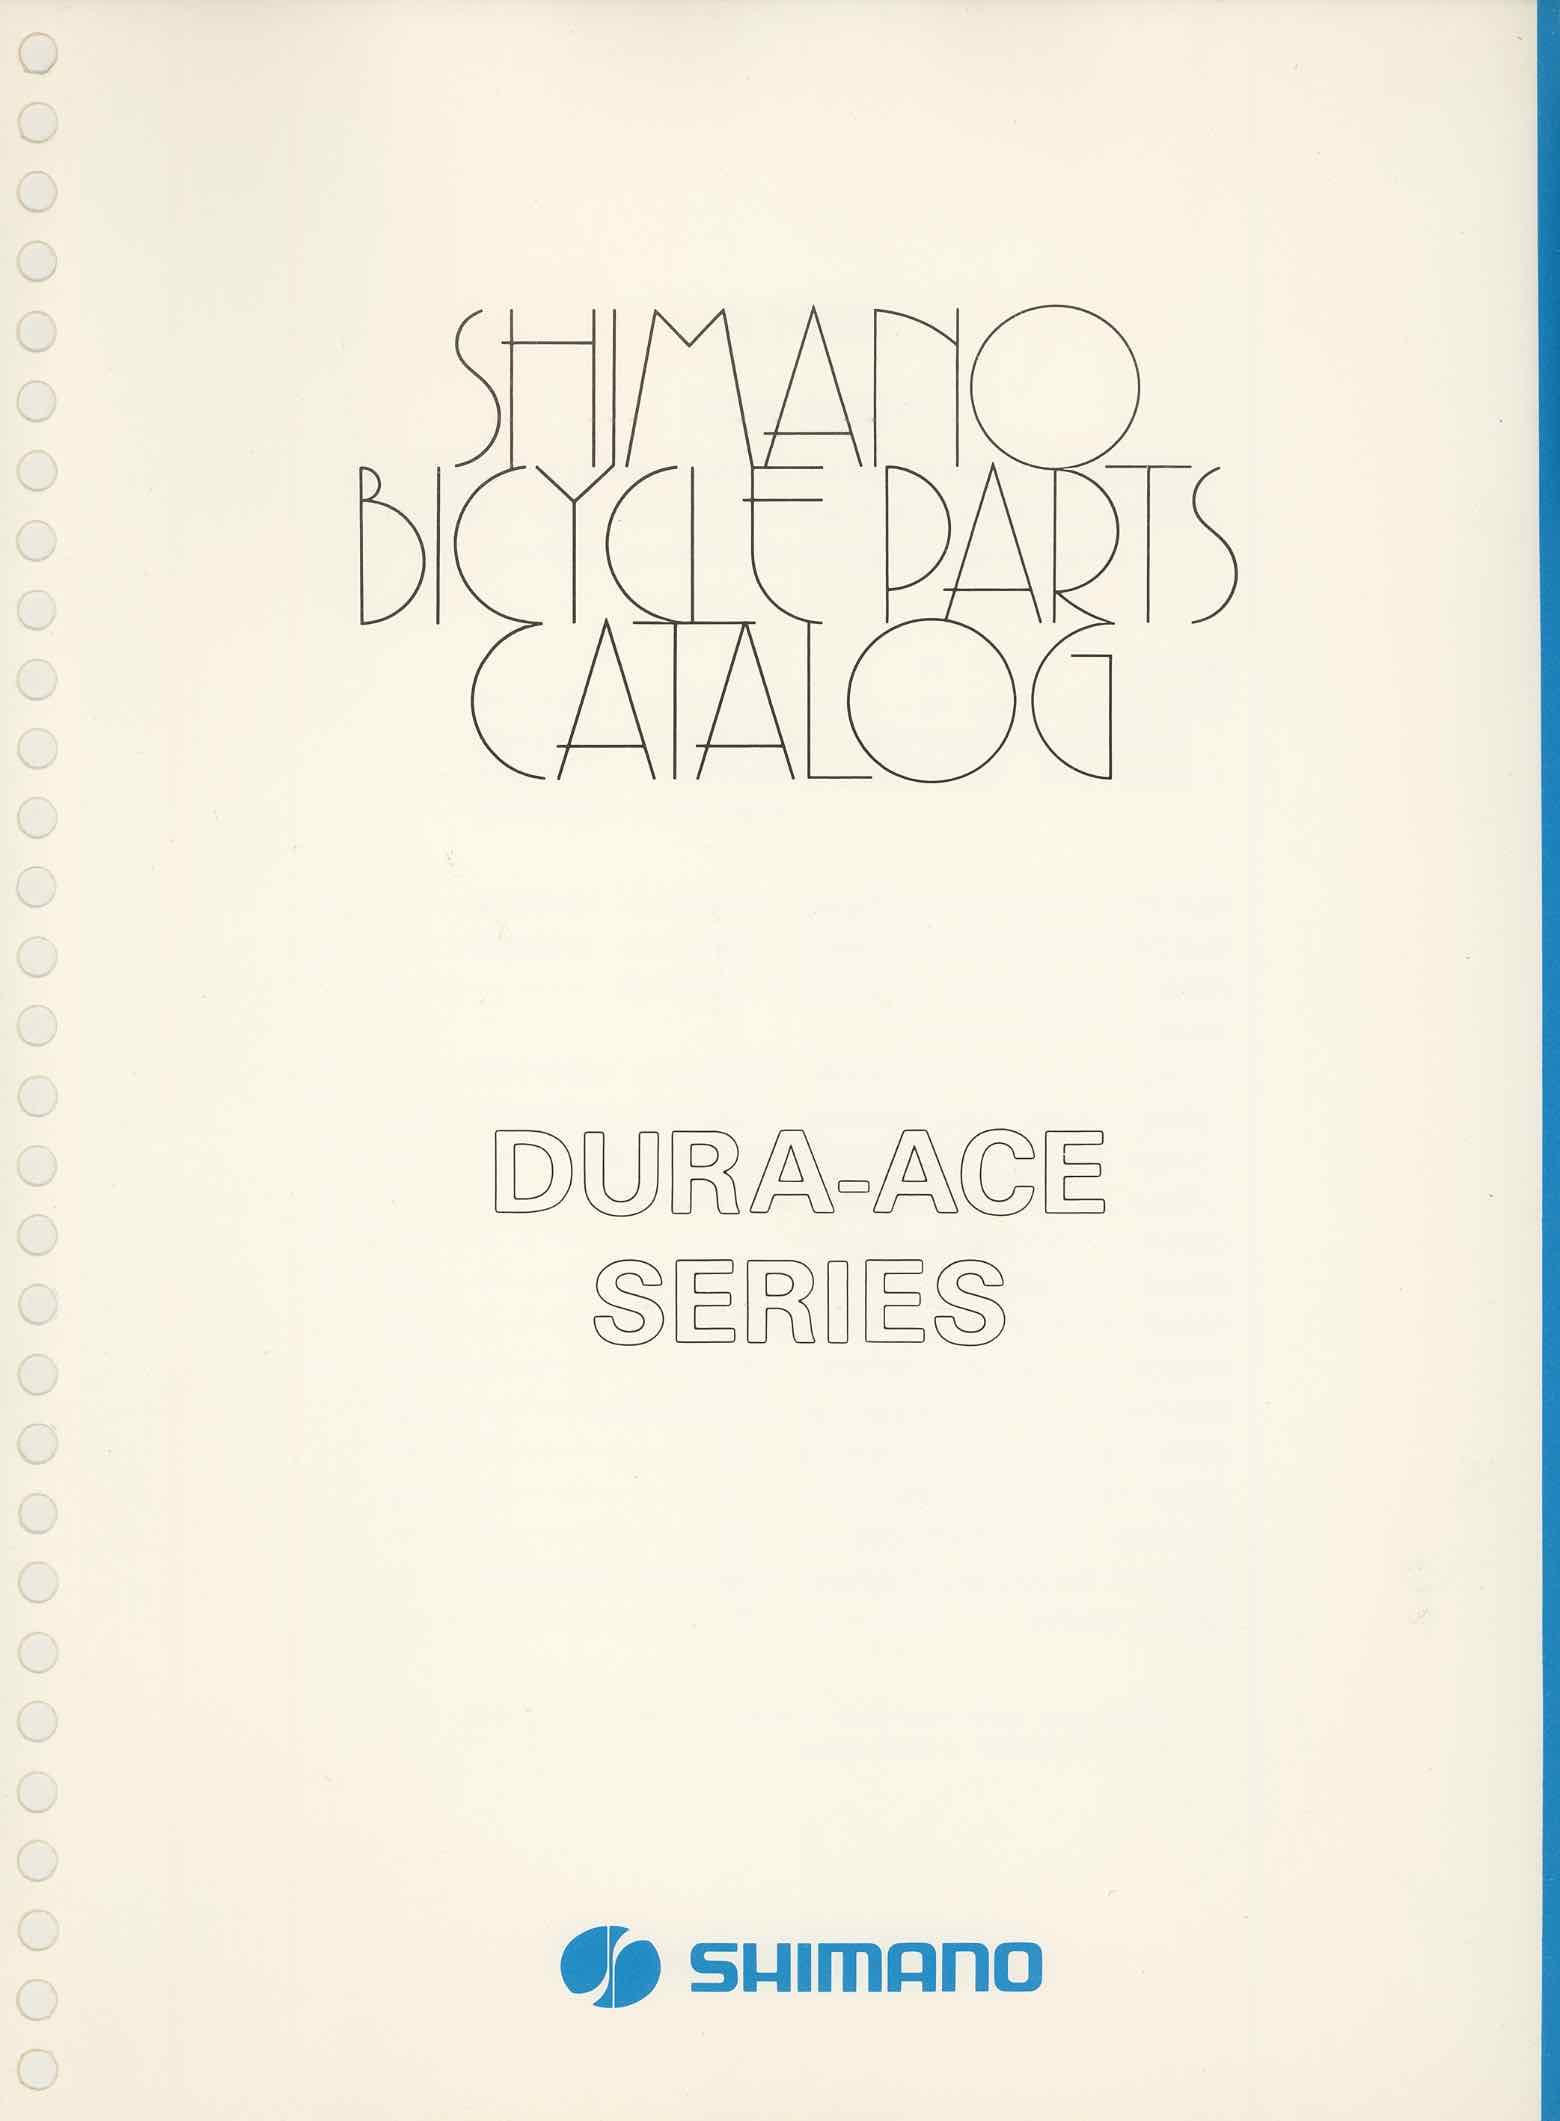 Shimano Bicycle Parts Catalog - 1973 Dura-Ace series section divider main image